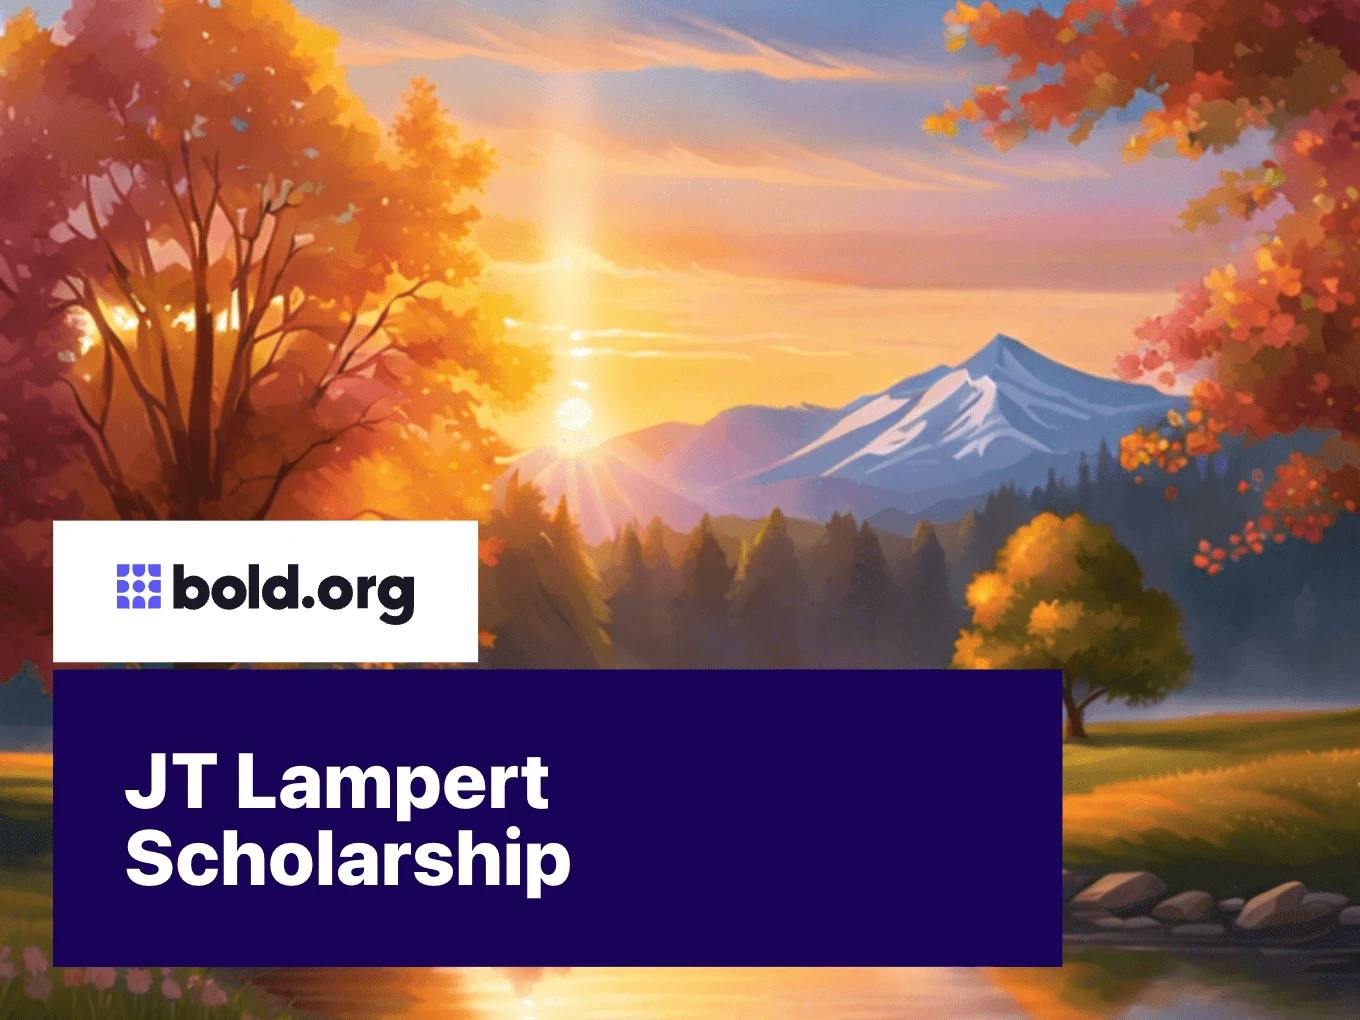 JT Lampert Scholarship